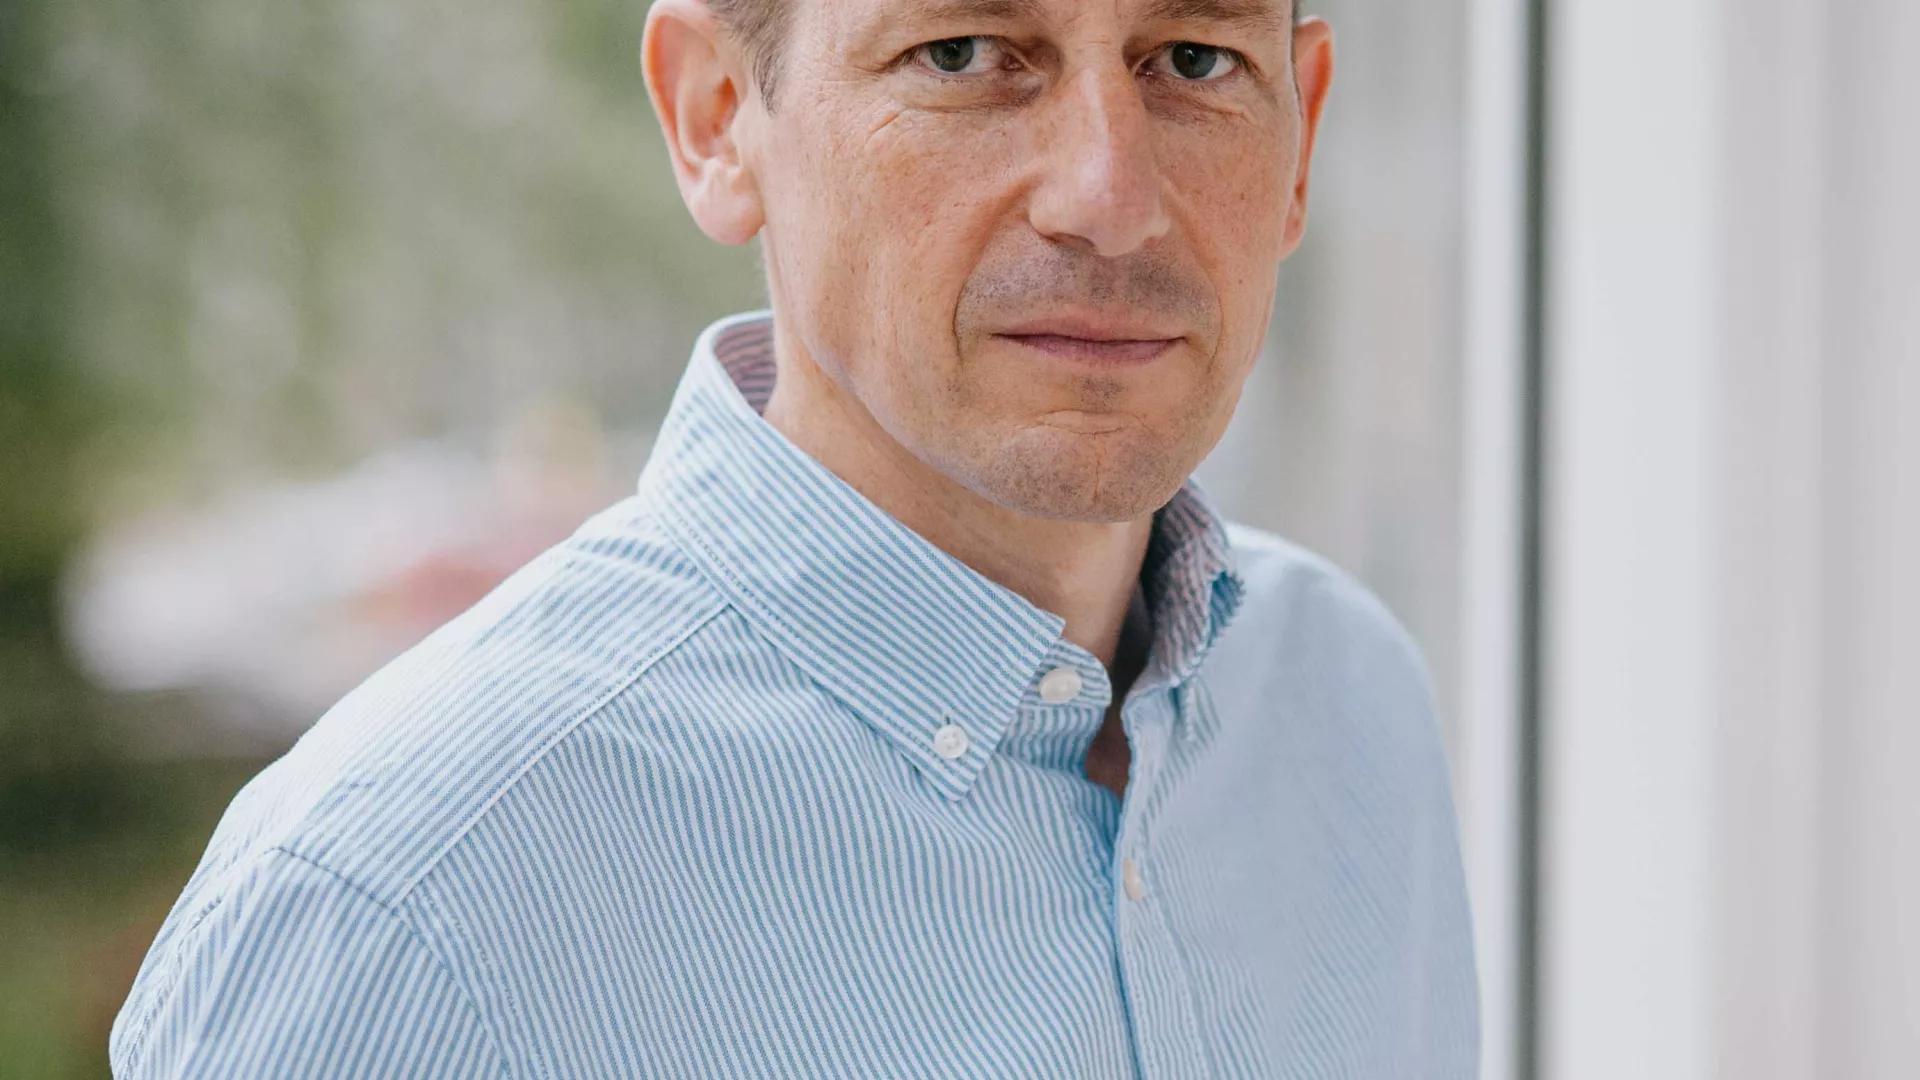 Johann Georg von Hülsen (CEO der SENEC GmbH) in blauem Hemd vor Fenster